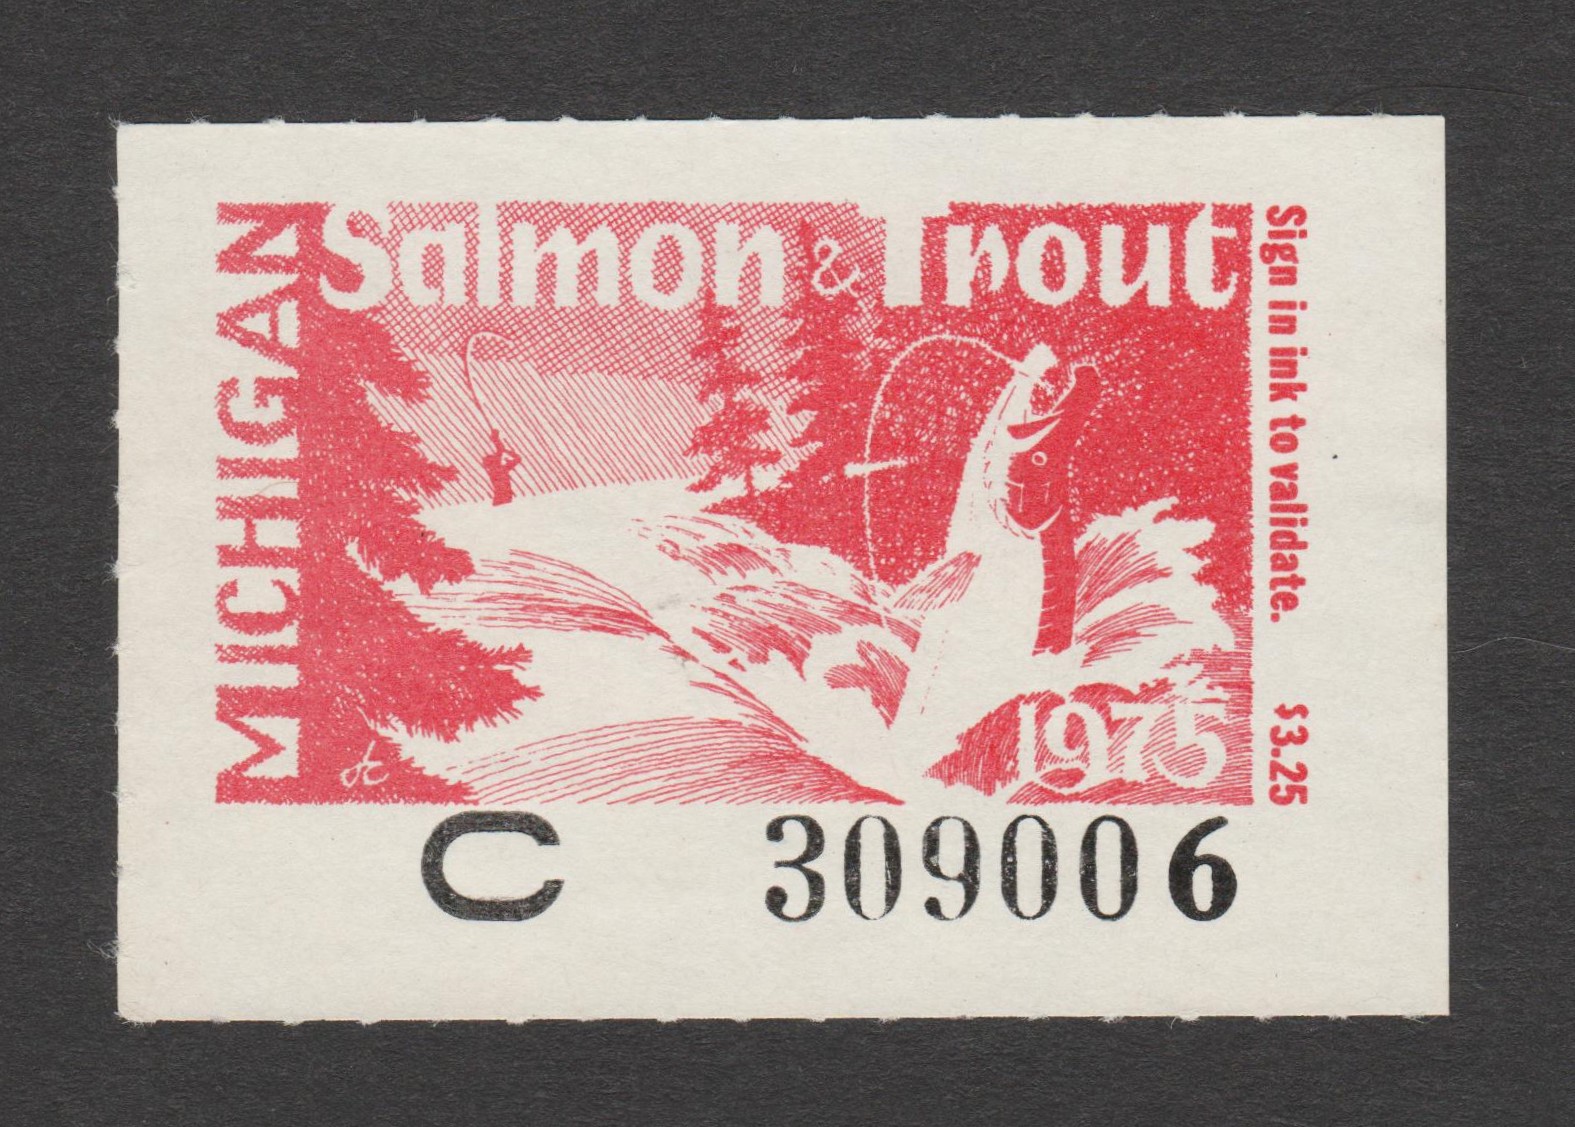 MI trout & salmon T&S6 $3.25 U VF, 1975 unsigned P